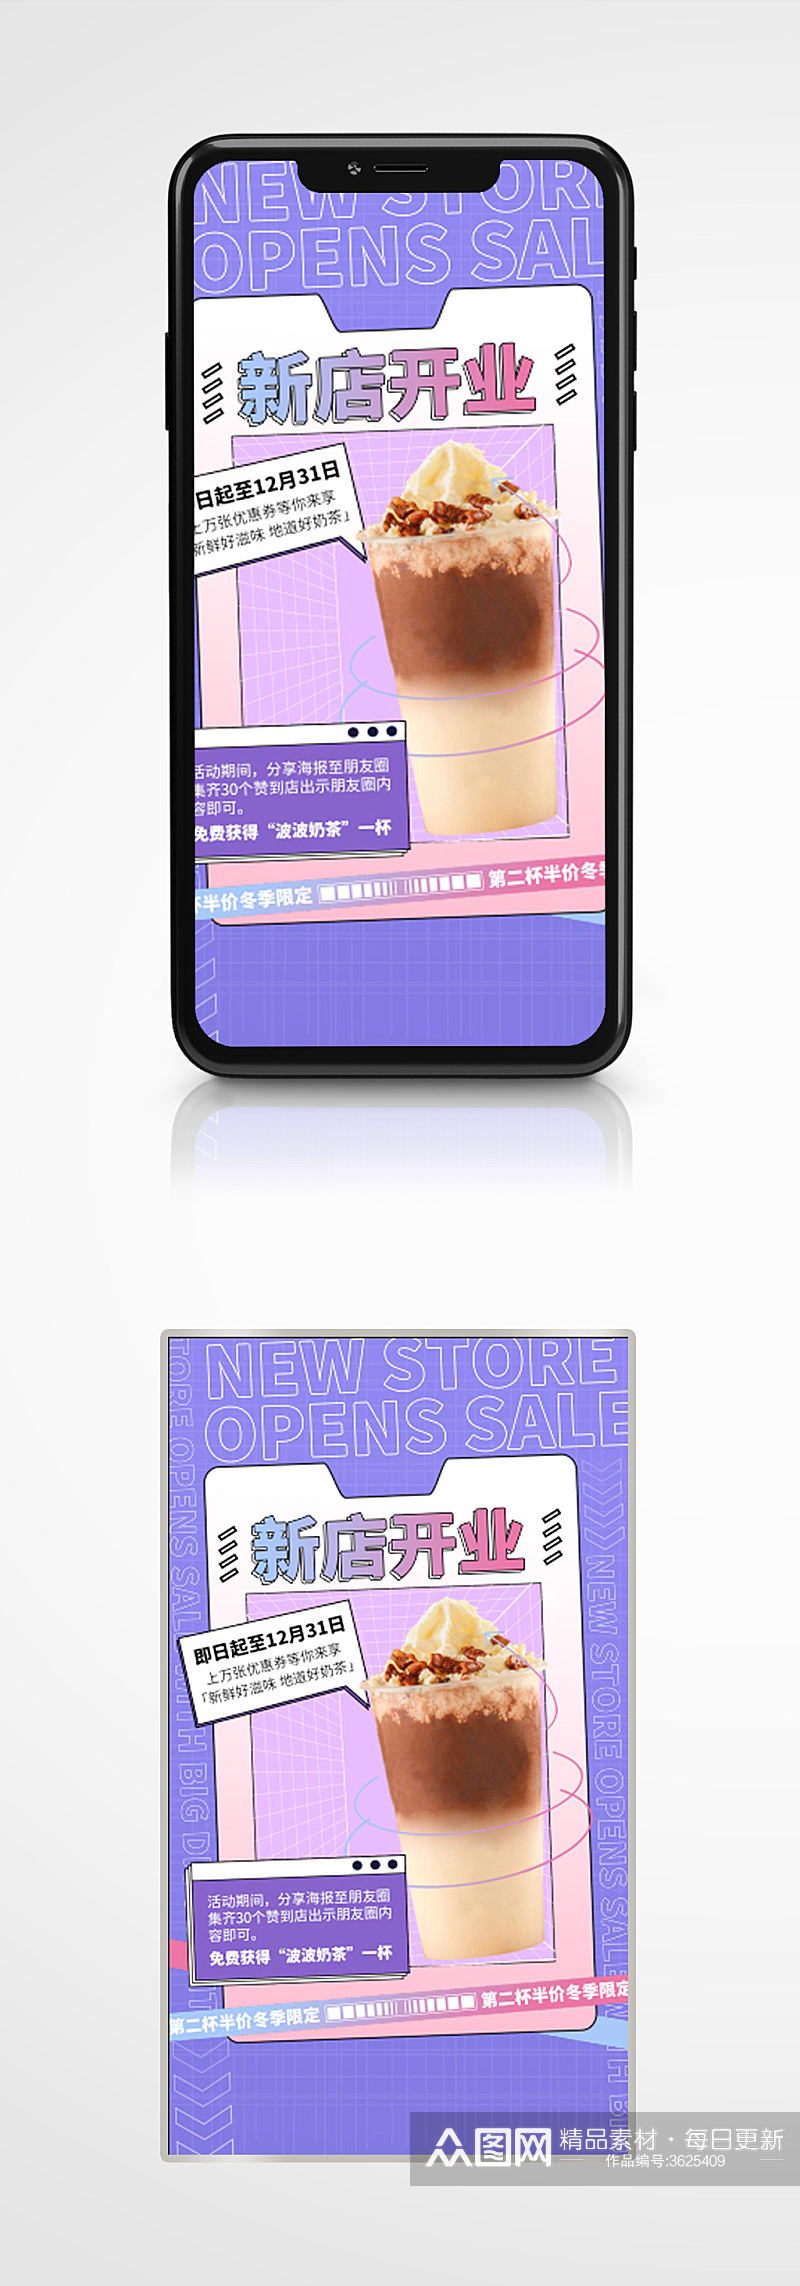 奶茶新店开业手机海报紫色酸性饮料素材